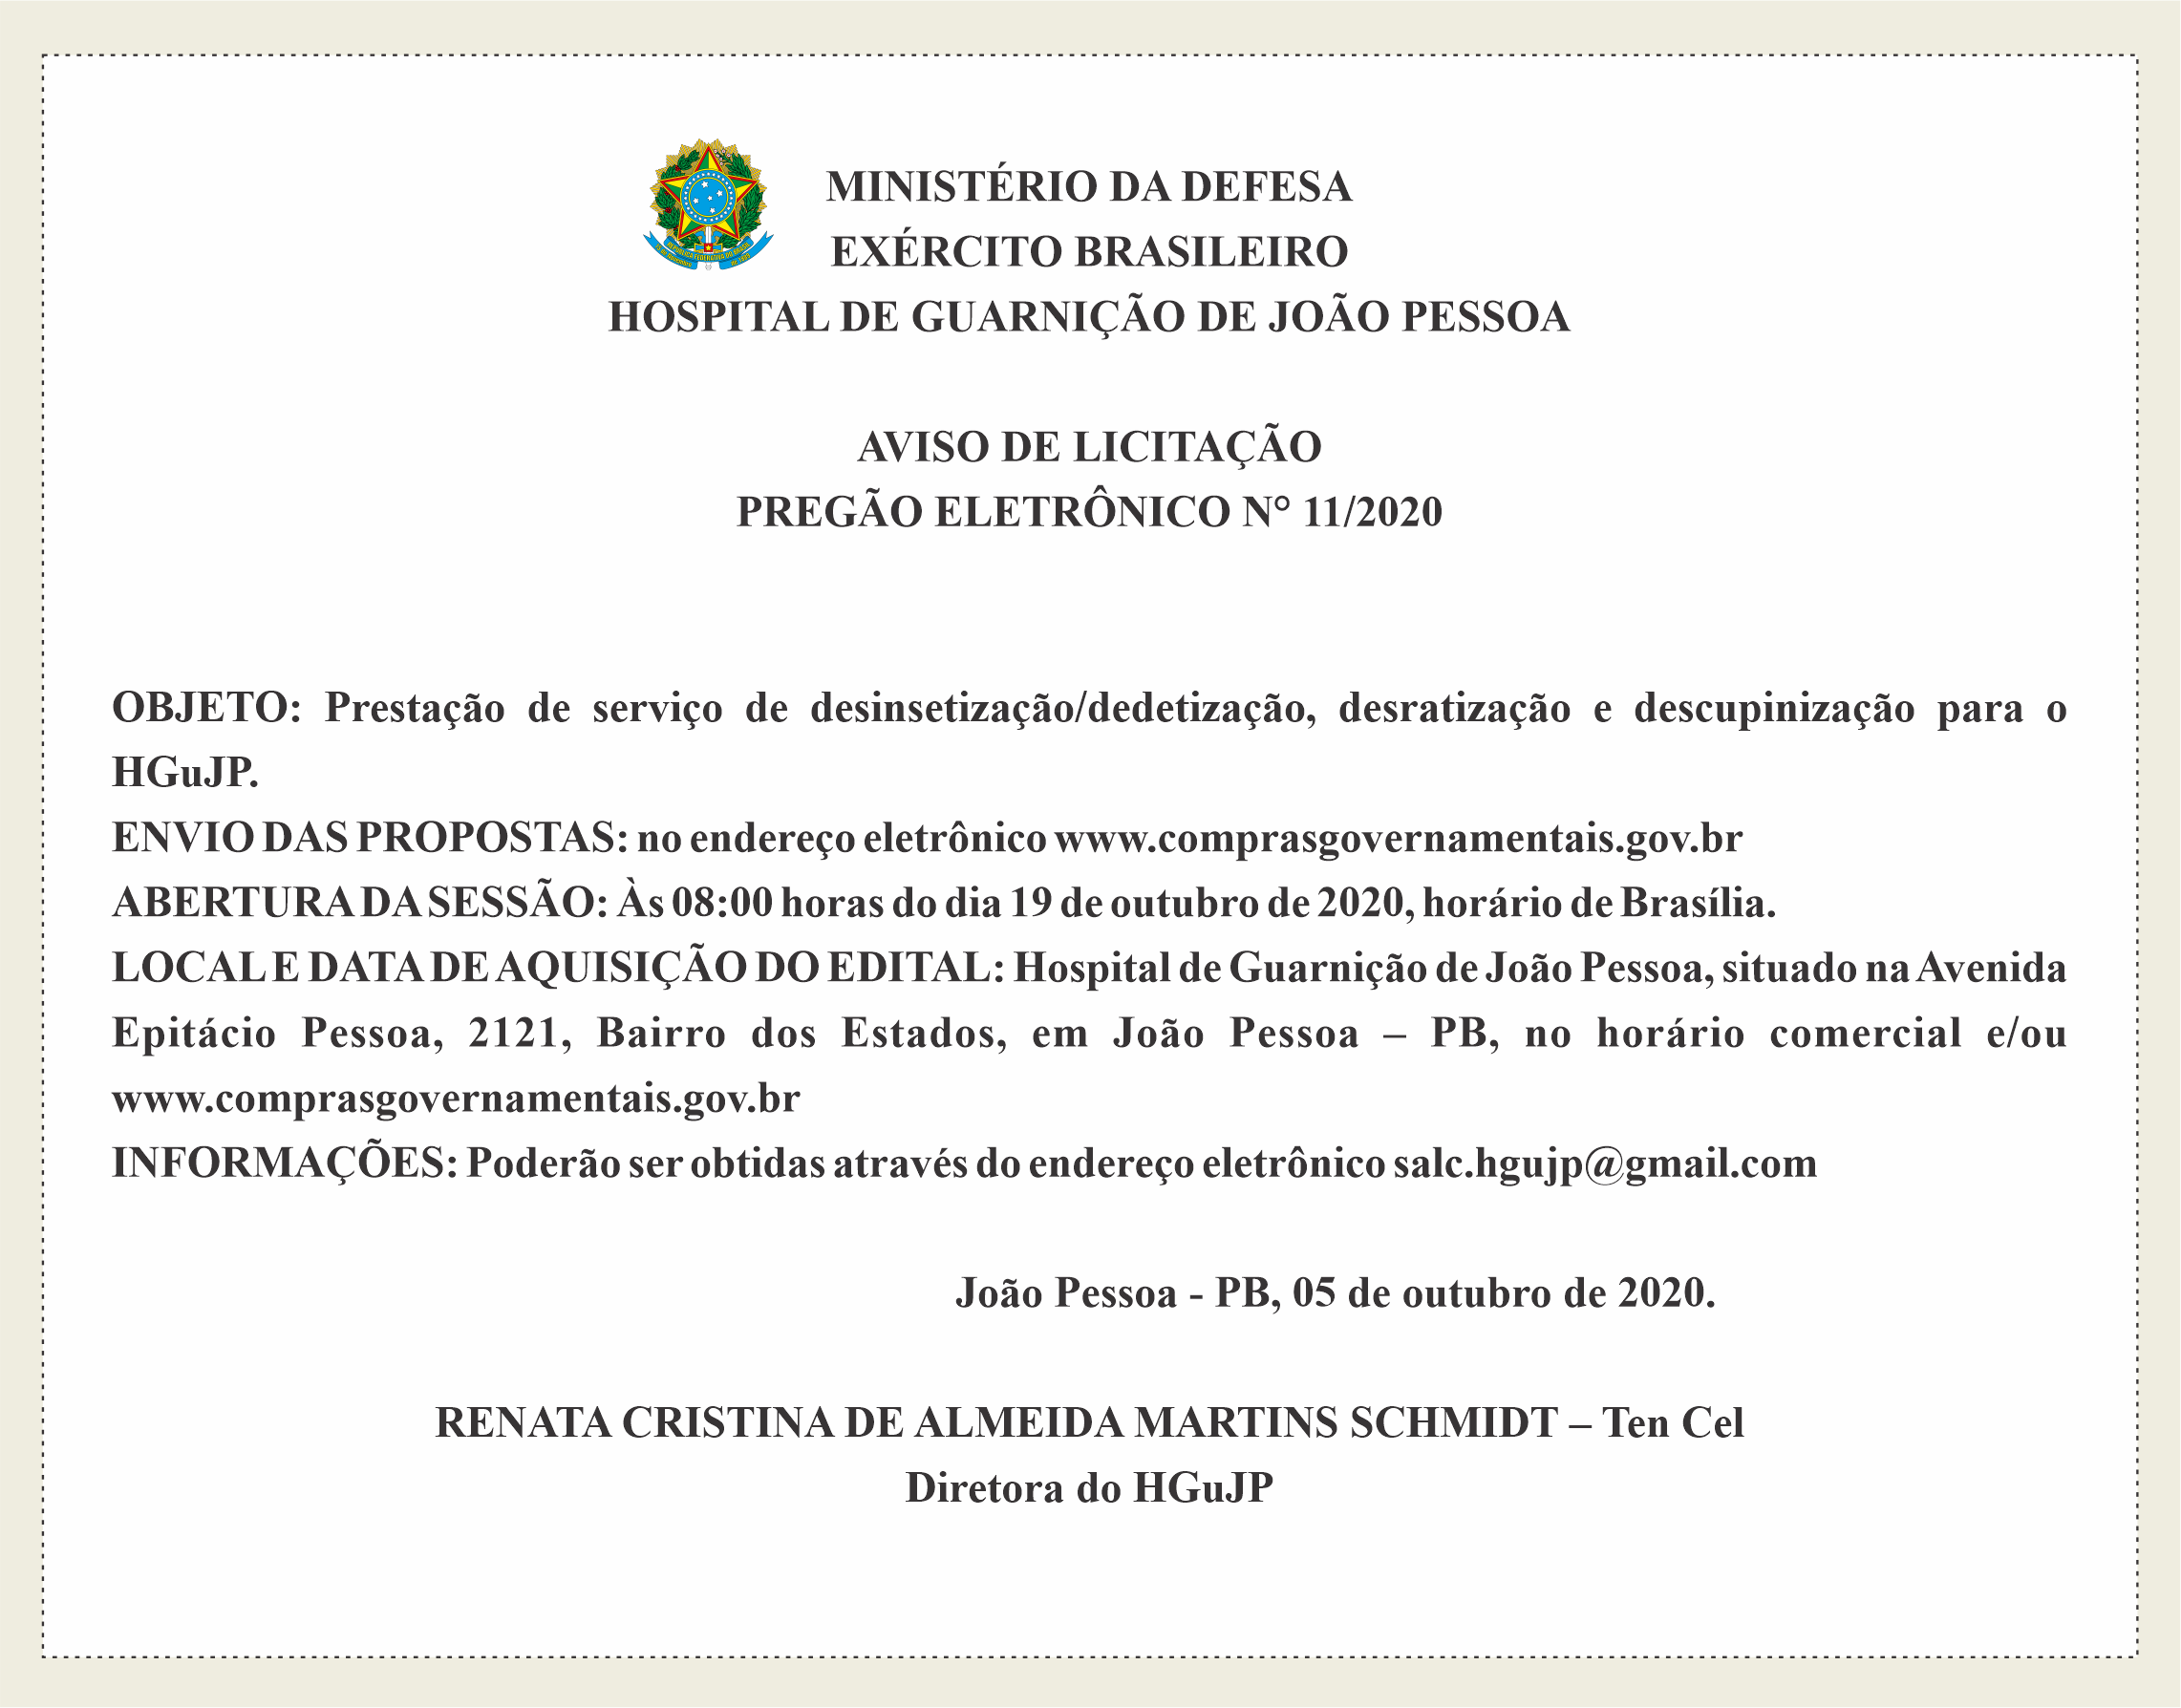 HOSPITAL DE GUARNIÇÃO – AVISO DE LICITAÇÃO – PREGÃO ELETRÔNICO N° 11/2020